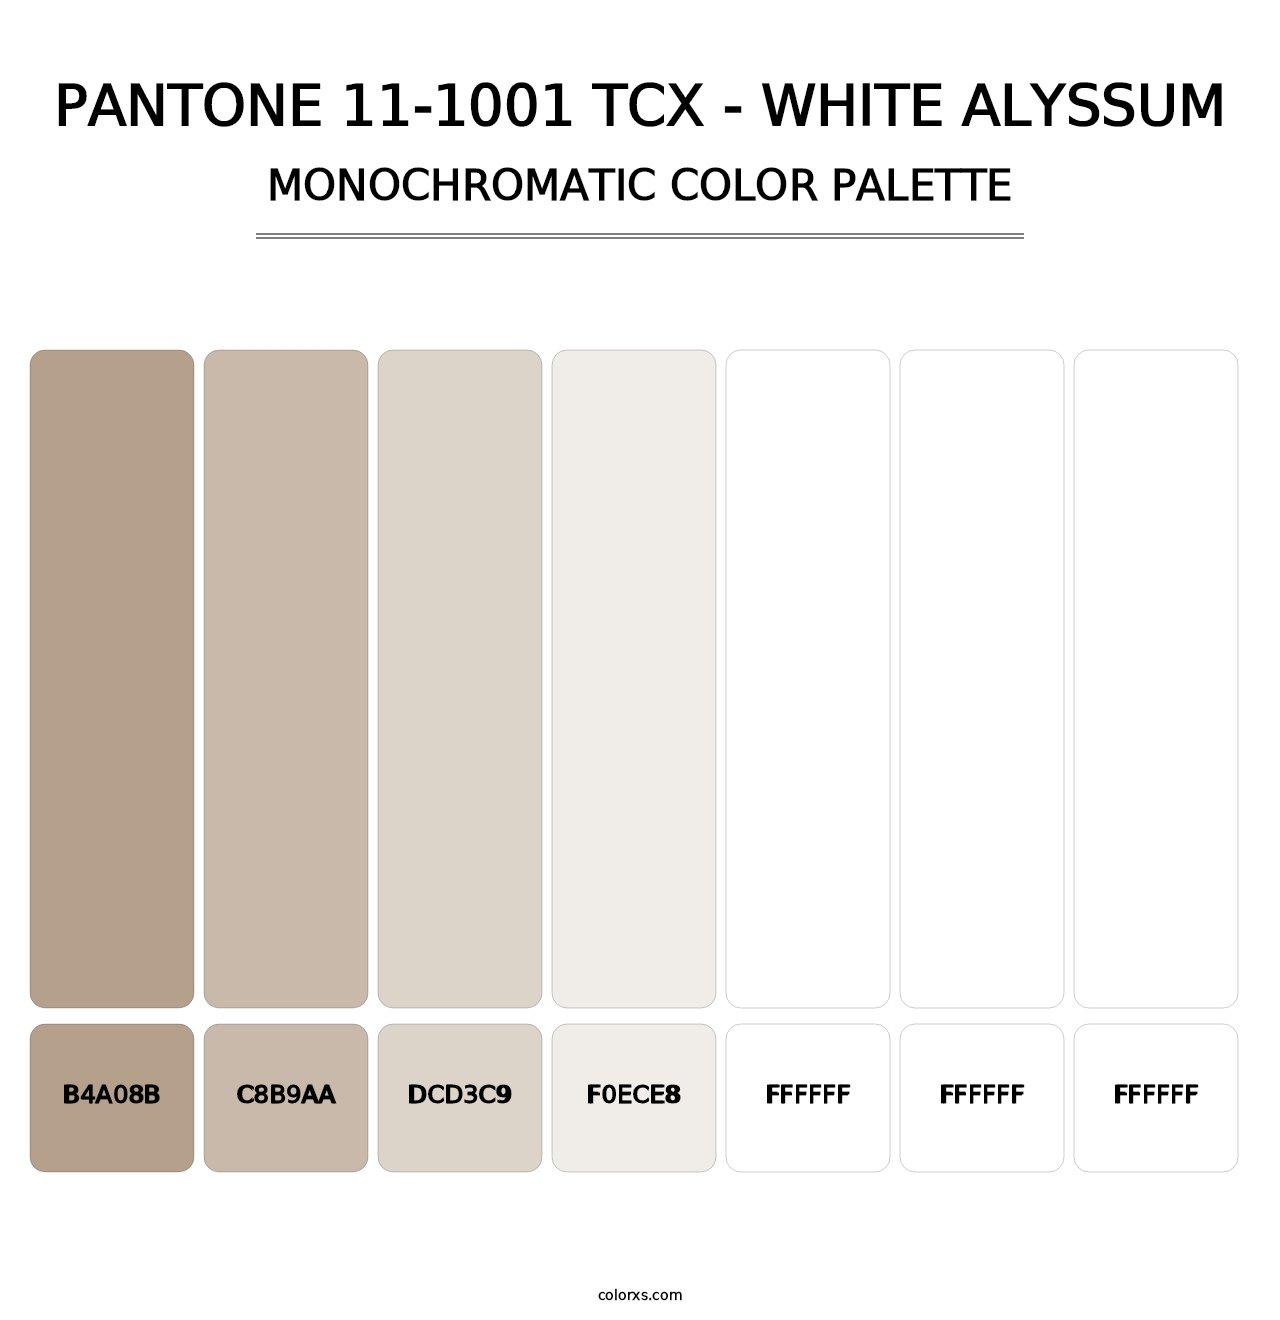 PANTONE 11-1001 TCX - White Alyssum - Monochromatic Color Palette